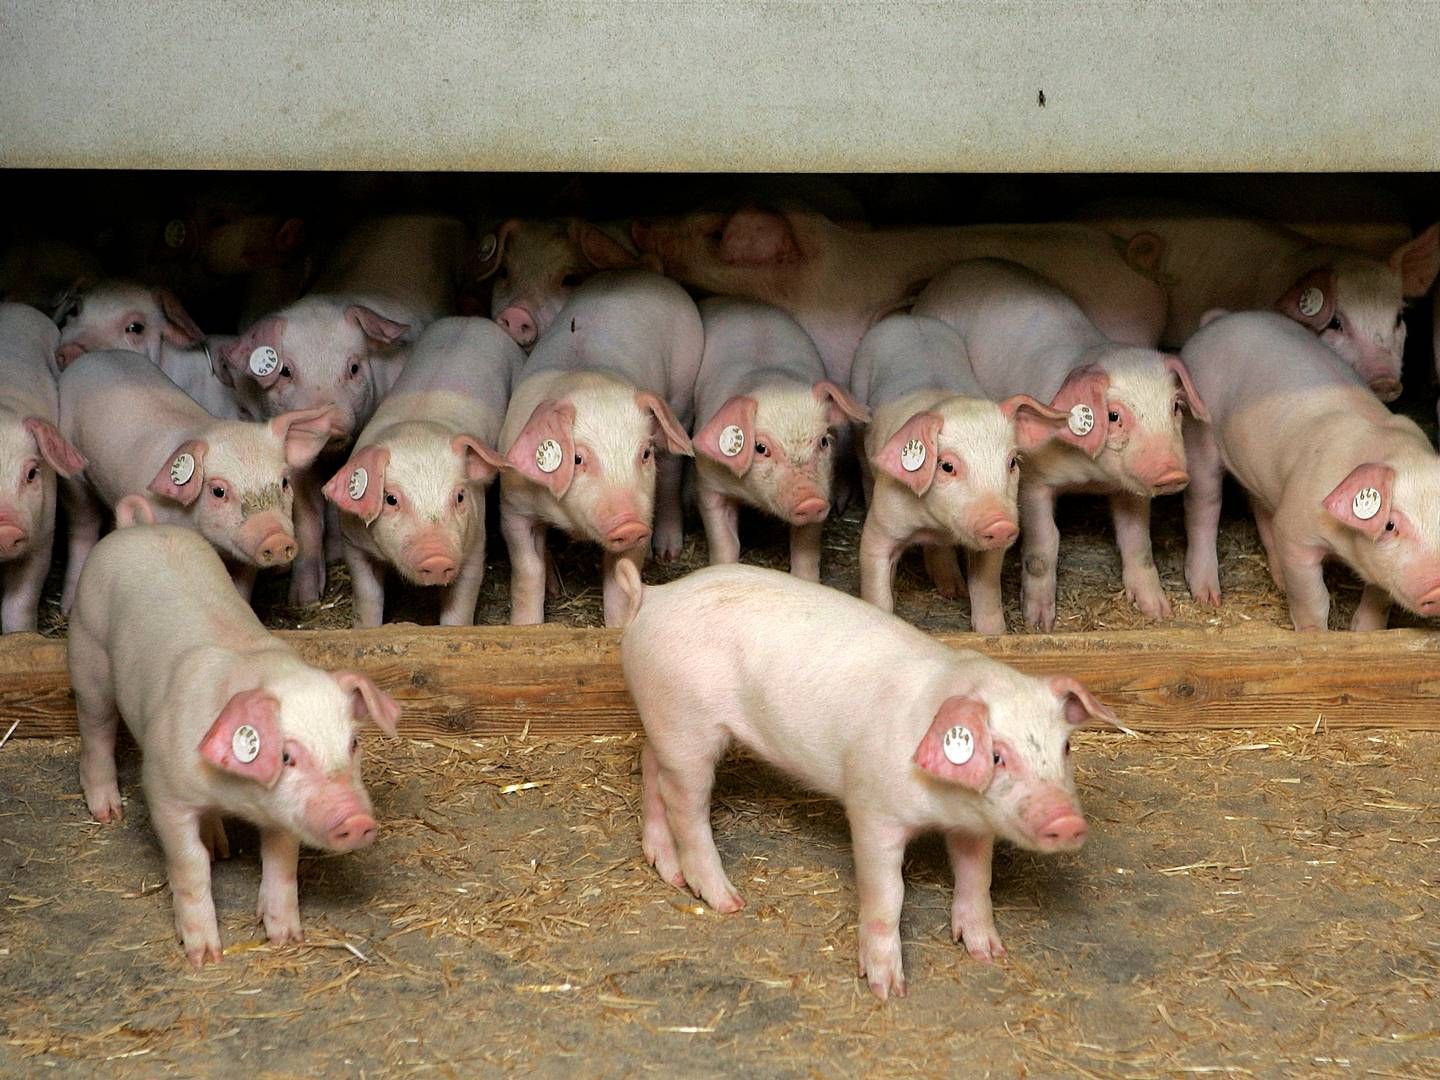 Selskabet Porc-Ex, som er ét af Bøgebjerg Holdings datterselskaber, beskæftiger sig med griseeksport, men søsterselskabet Pecus eksporterer kvæg. | Foto: Finn Frandsen/Politiken/Ritzau Scanpix